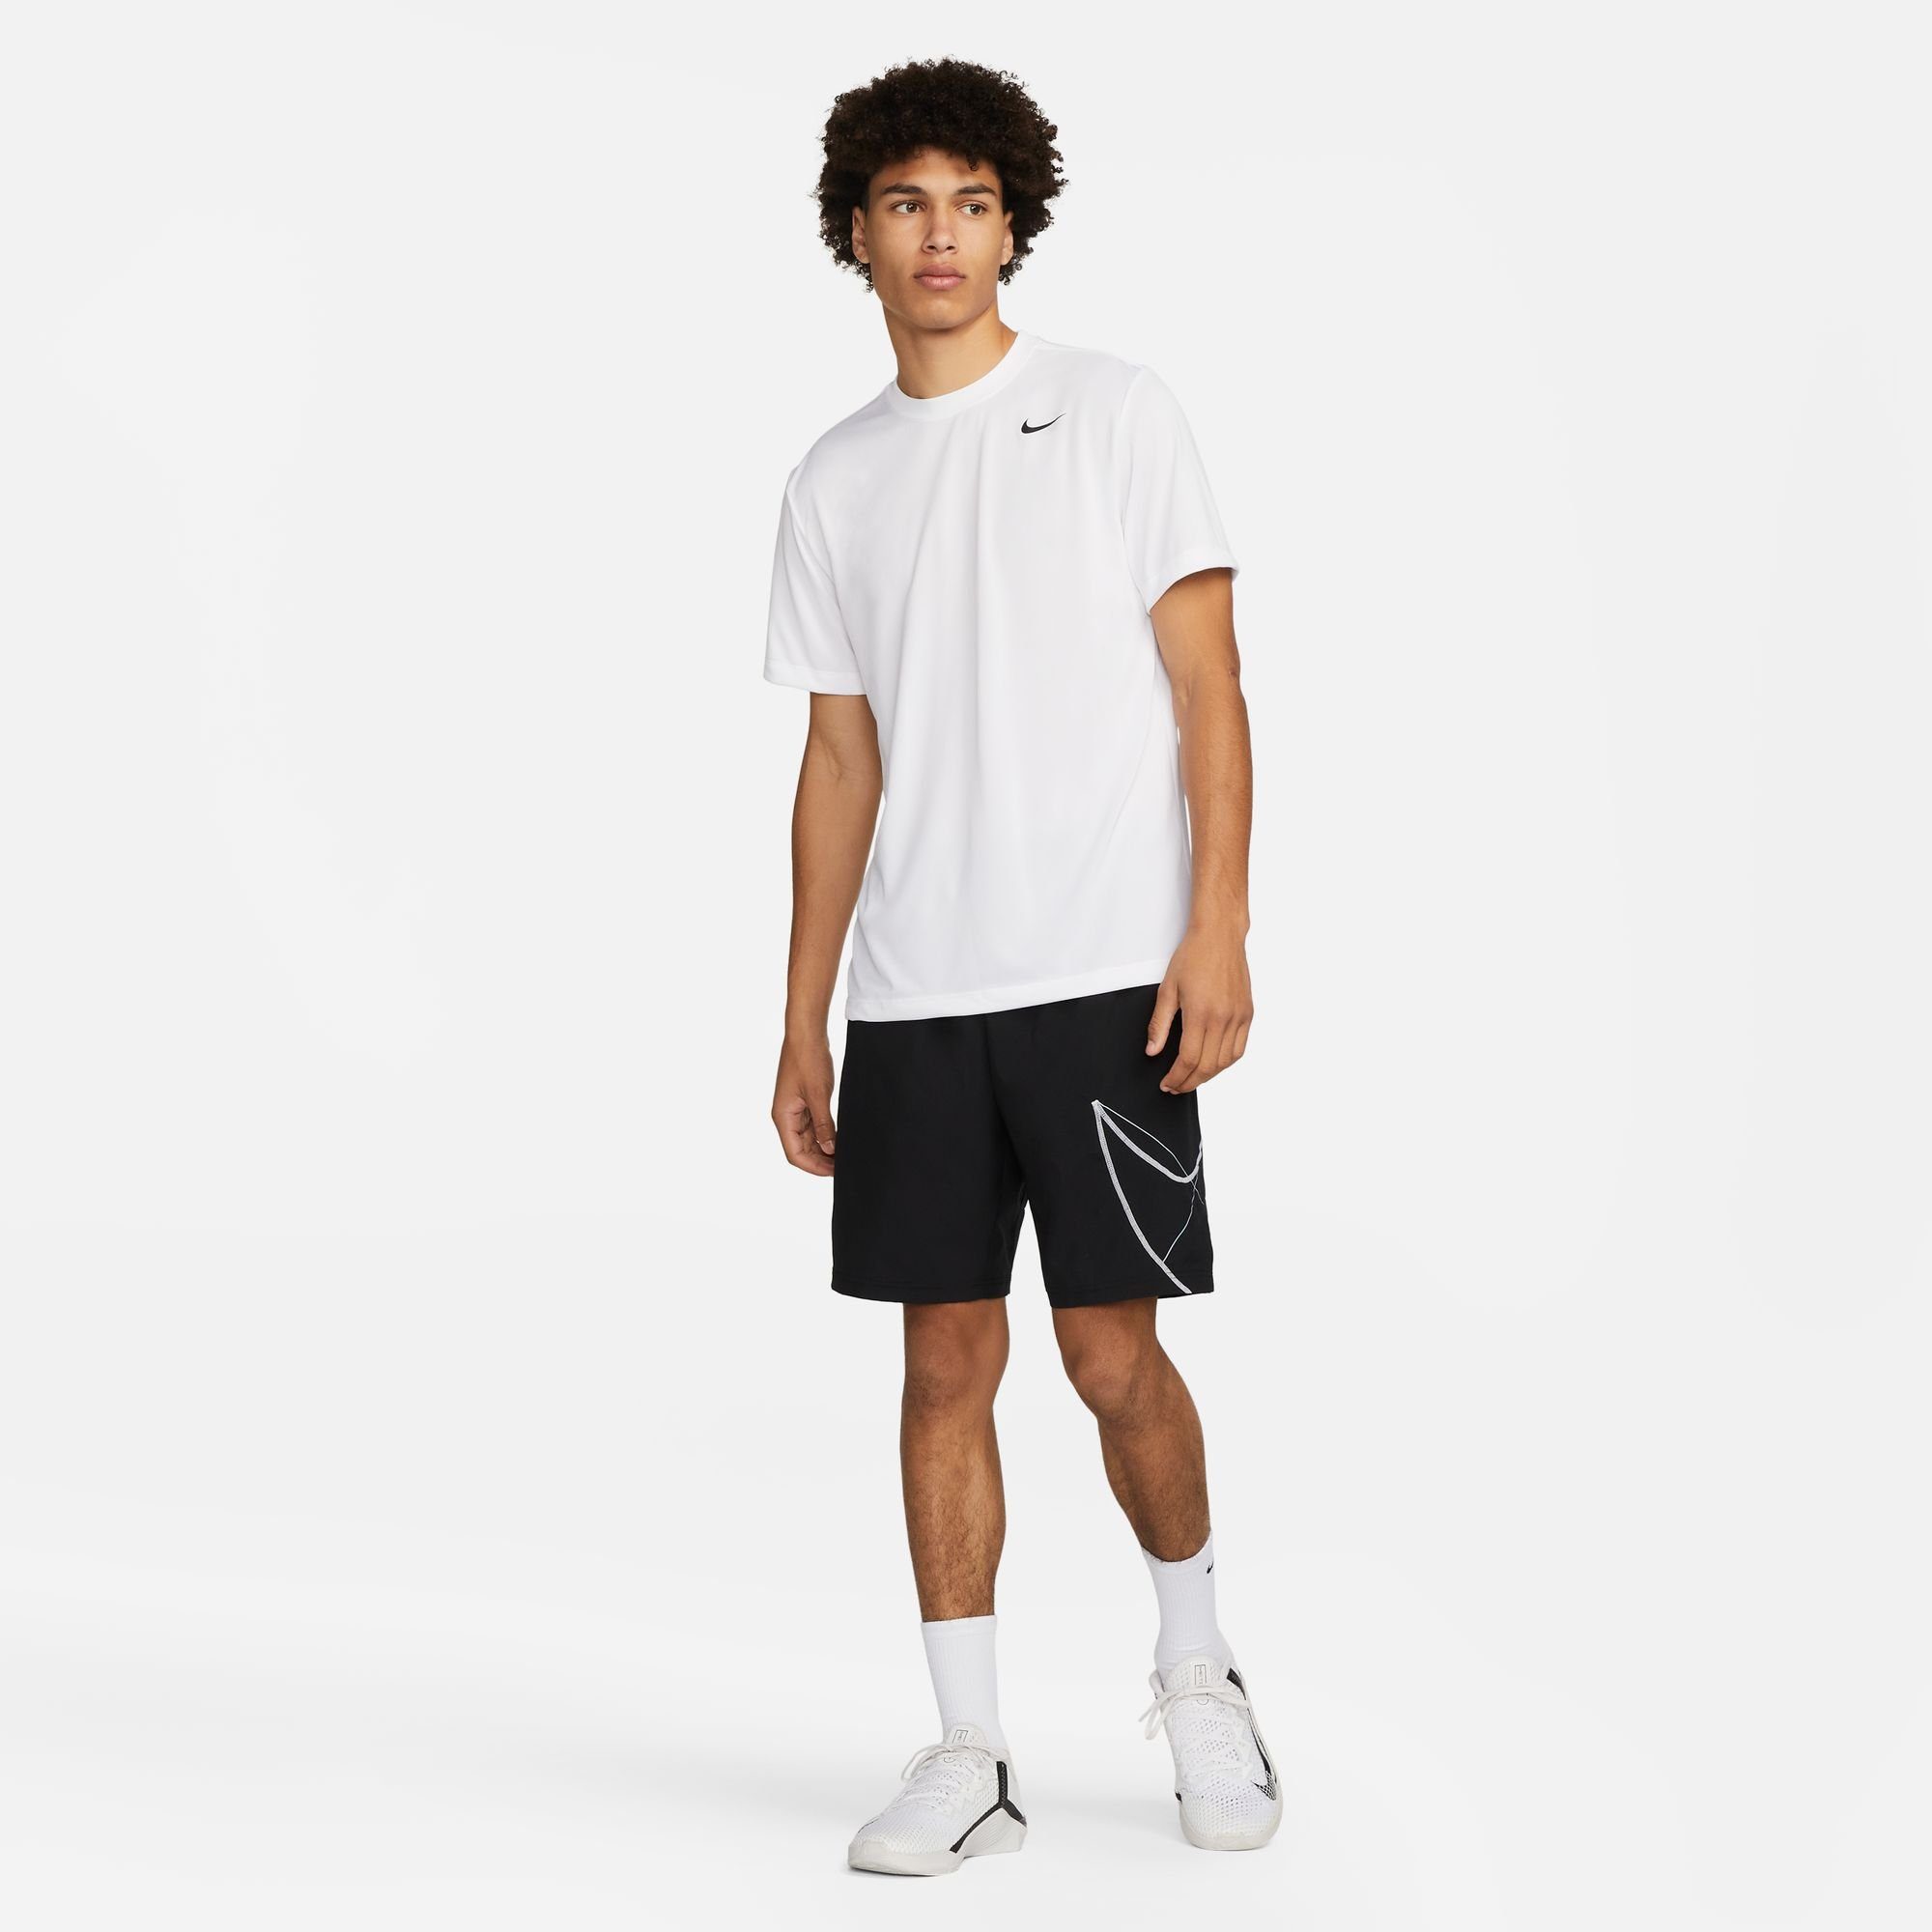 Trainingsshirt MEN'S T-SHIRT LEGEND DRI-FIT Nike FITNESS WHITE/BLACK